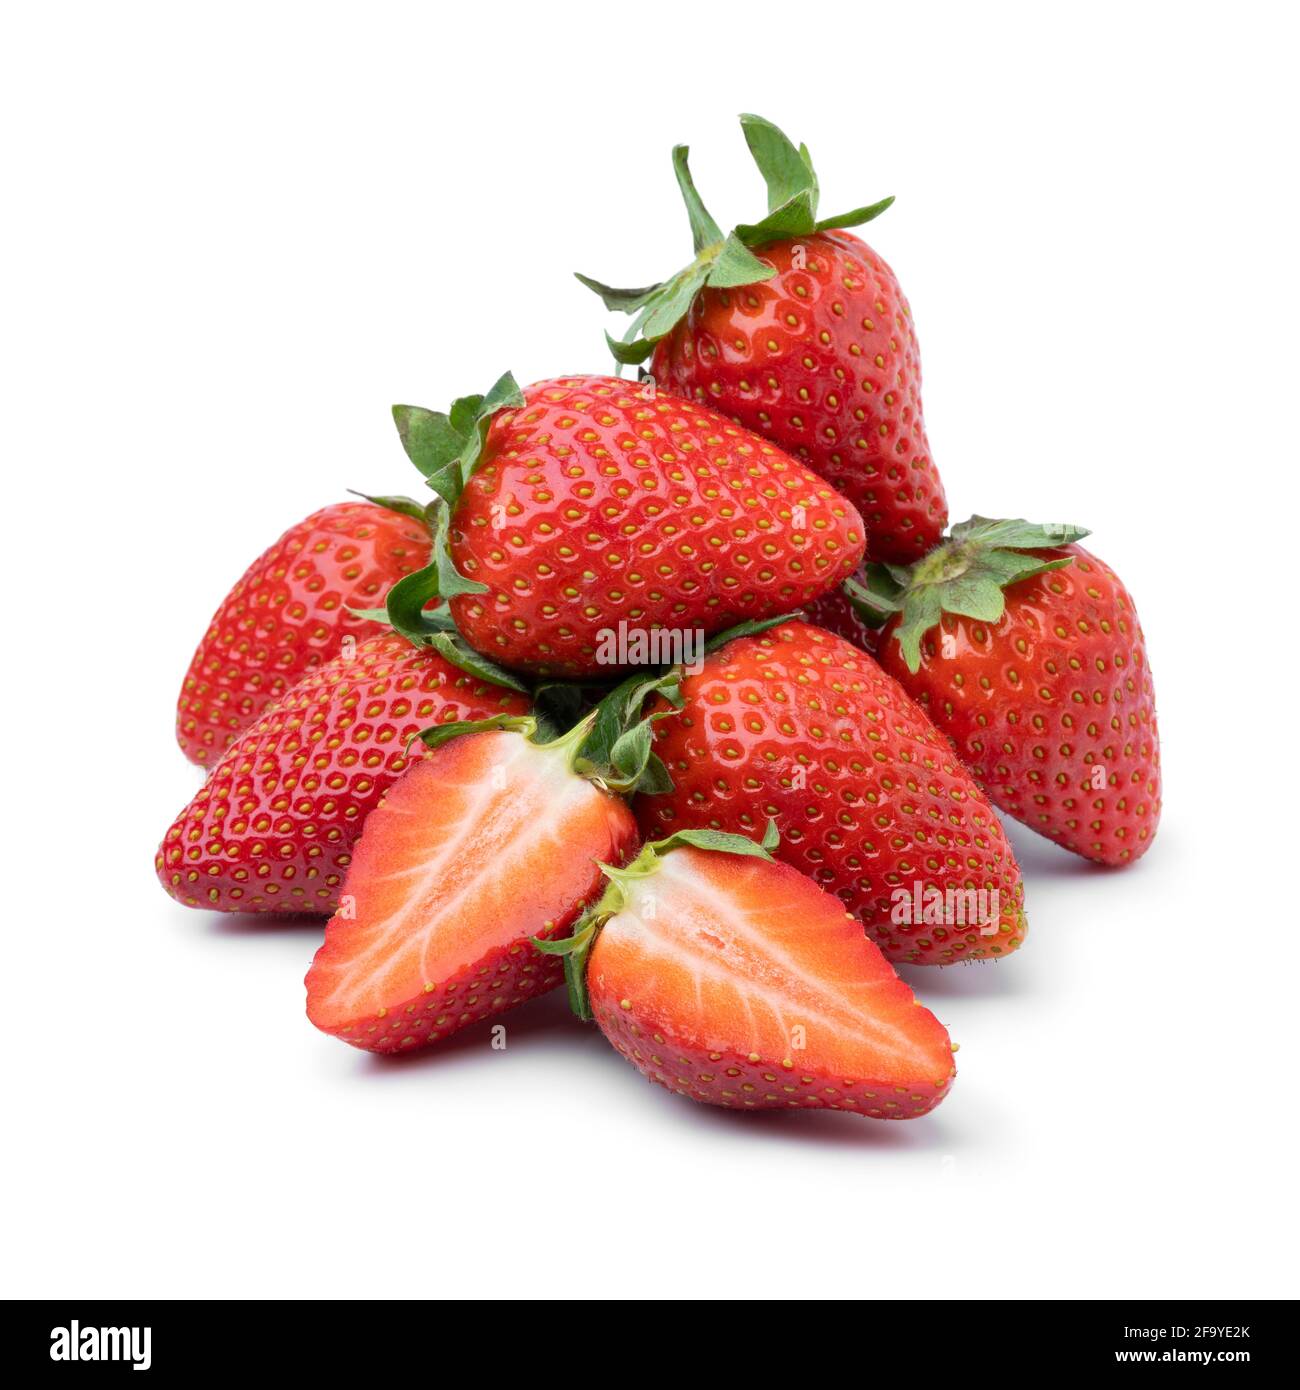 Tas de fraises rouges entières et à moitié mûres fraîchement cueillies isolé sur fond blanc Banque D'Images